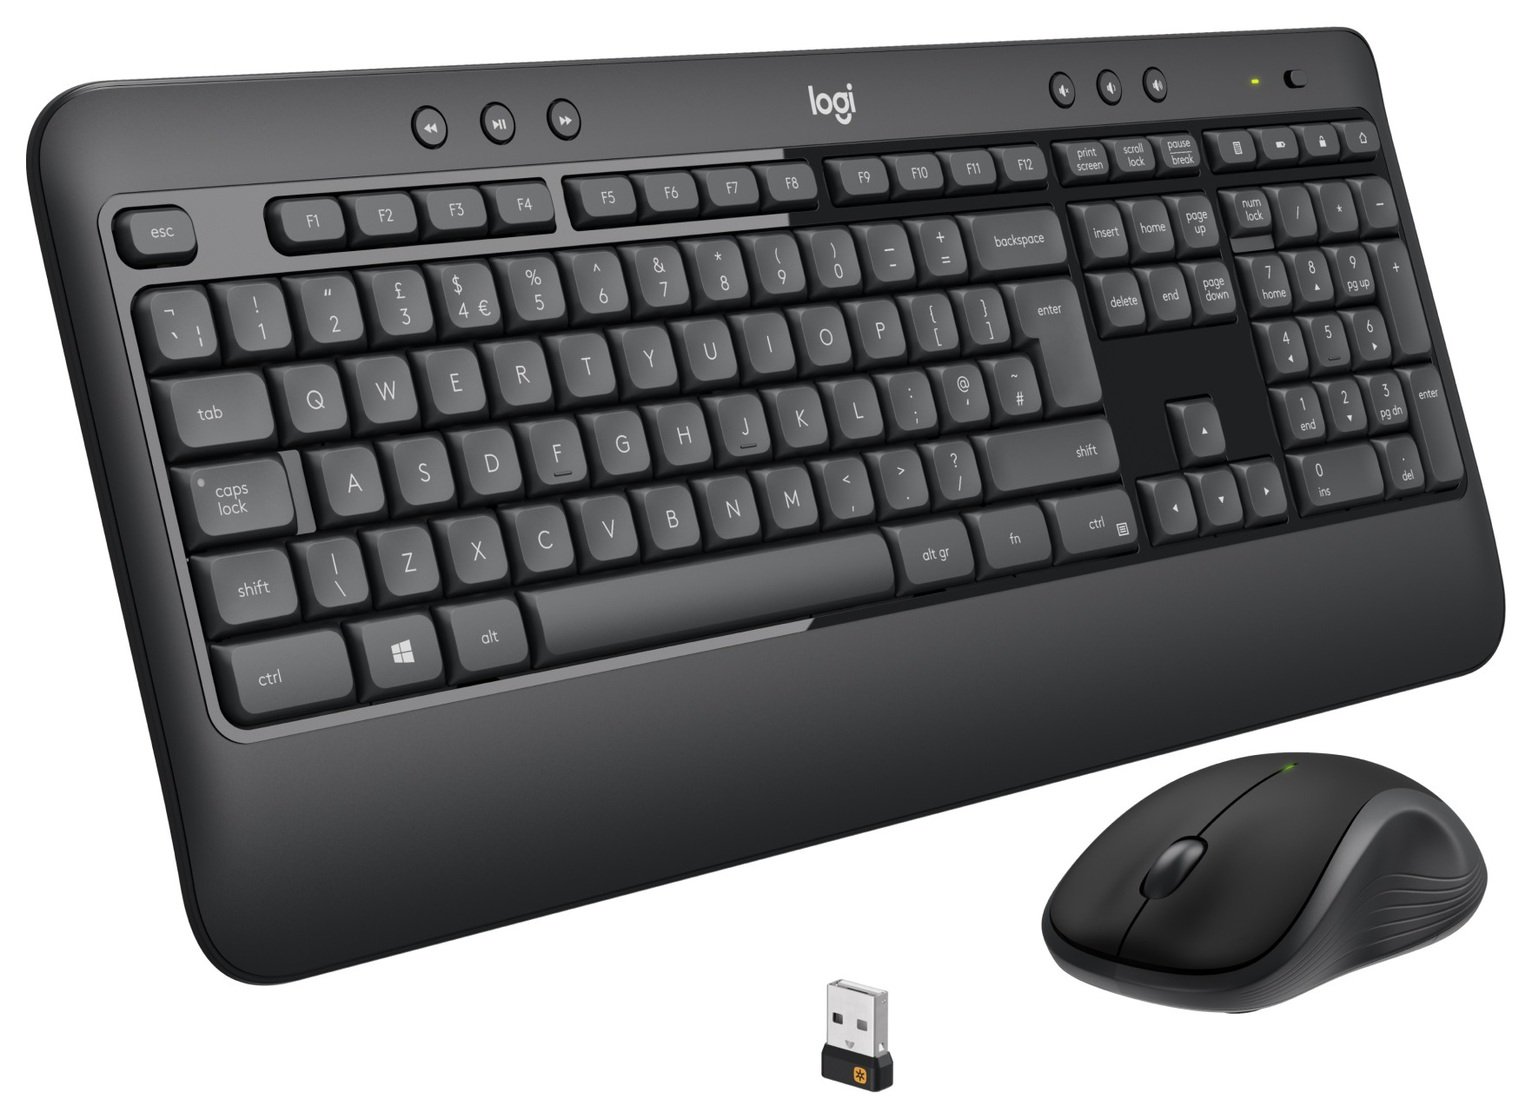 Logitech MK540 Wireless Mouse and Keyboard